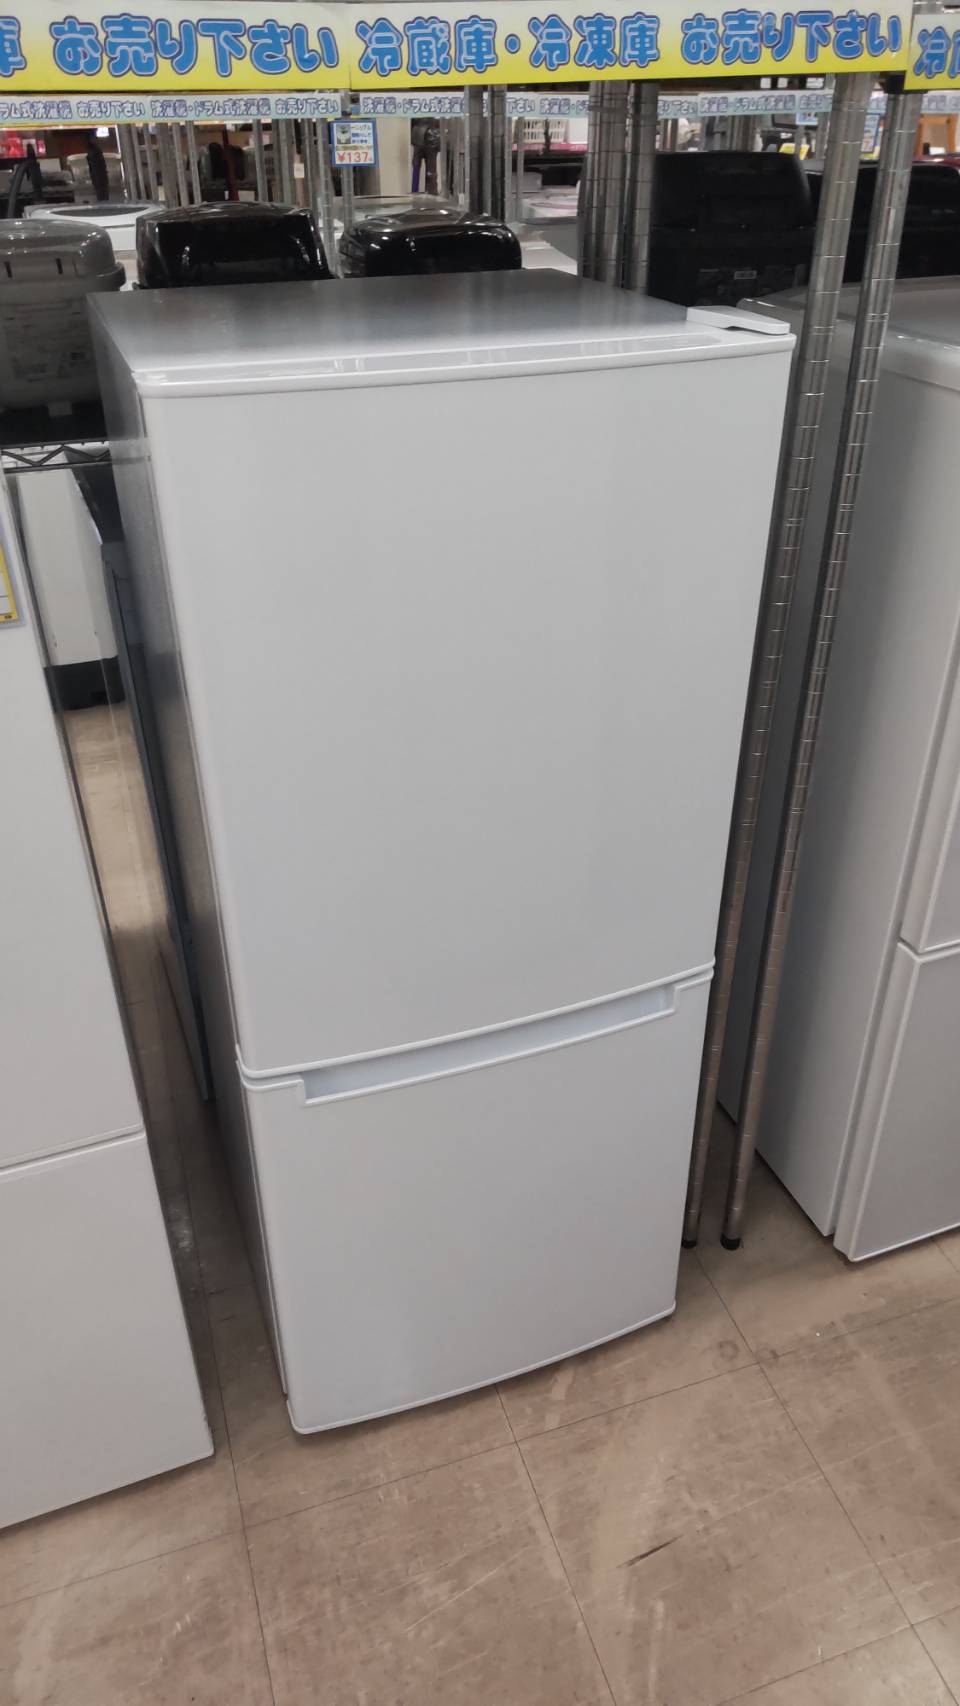 【✨NITORI ニトリ 106L 冷蔵庫 2020年製 NTR-106 たっぷり入る冷凍室✨】を買取させて頂きました！ - リサイクルマートは現在冷蔵庫の買取、家具の買取強化中です！お気軽にお問い合わせください。